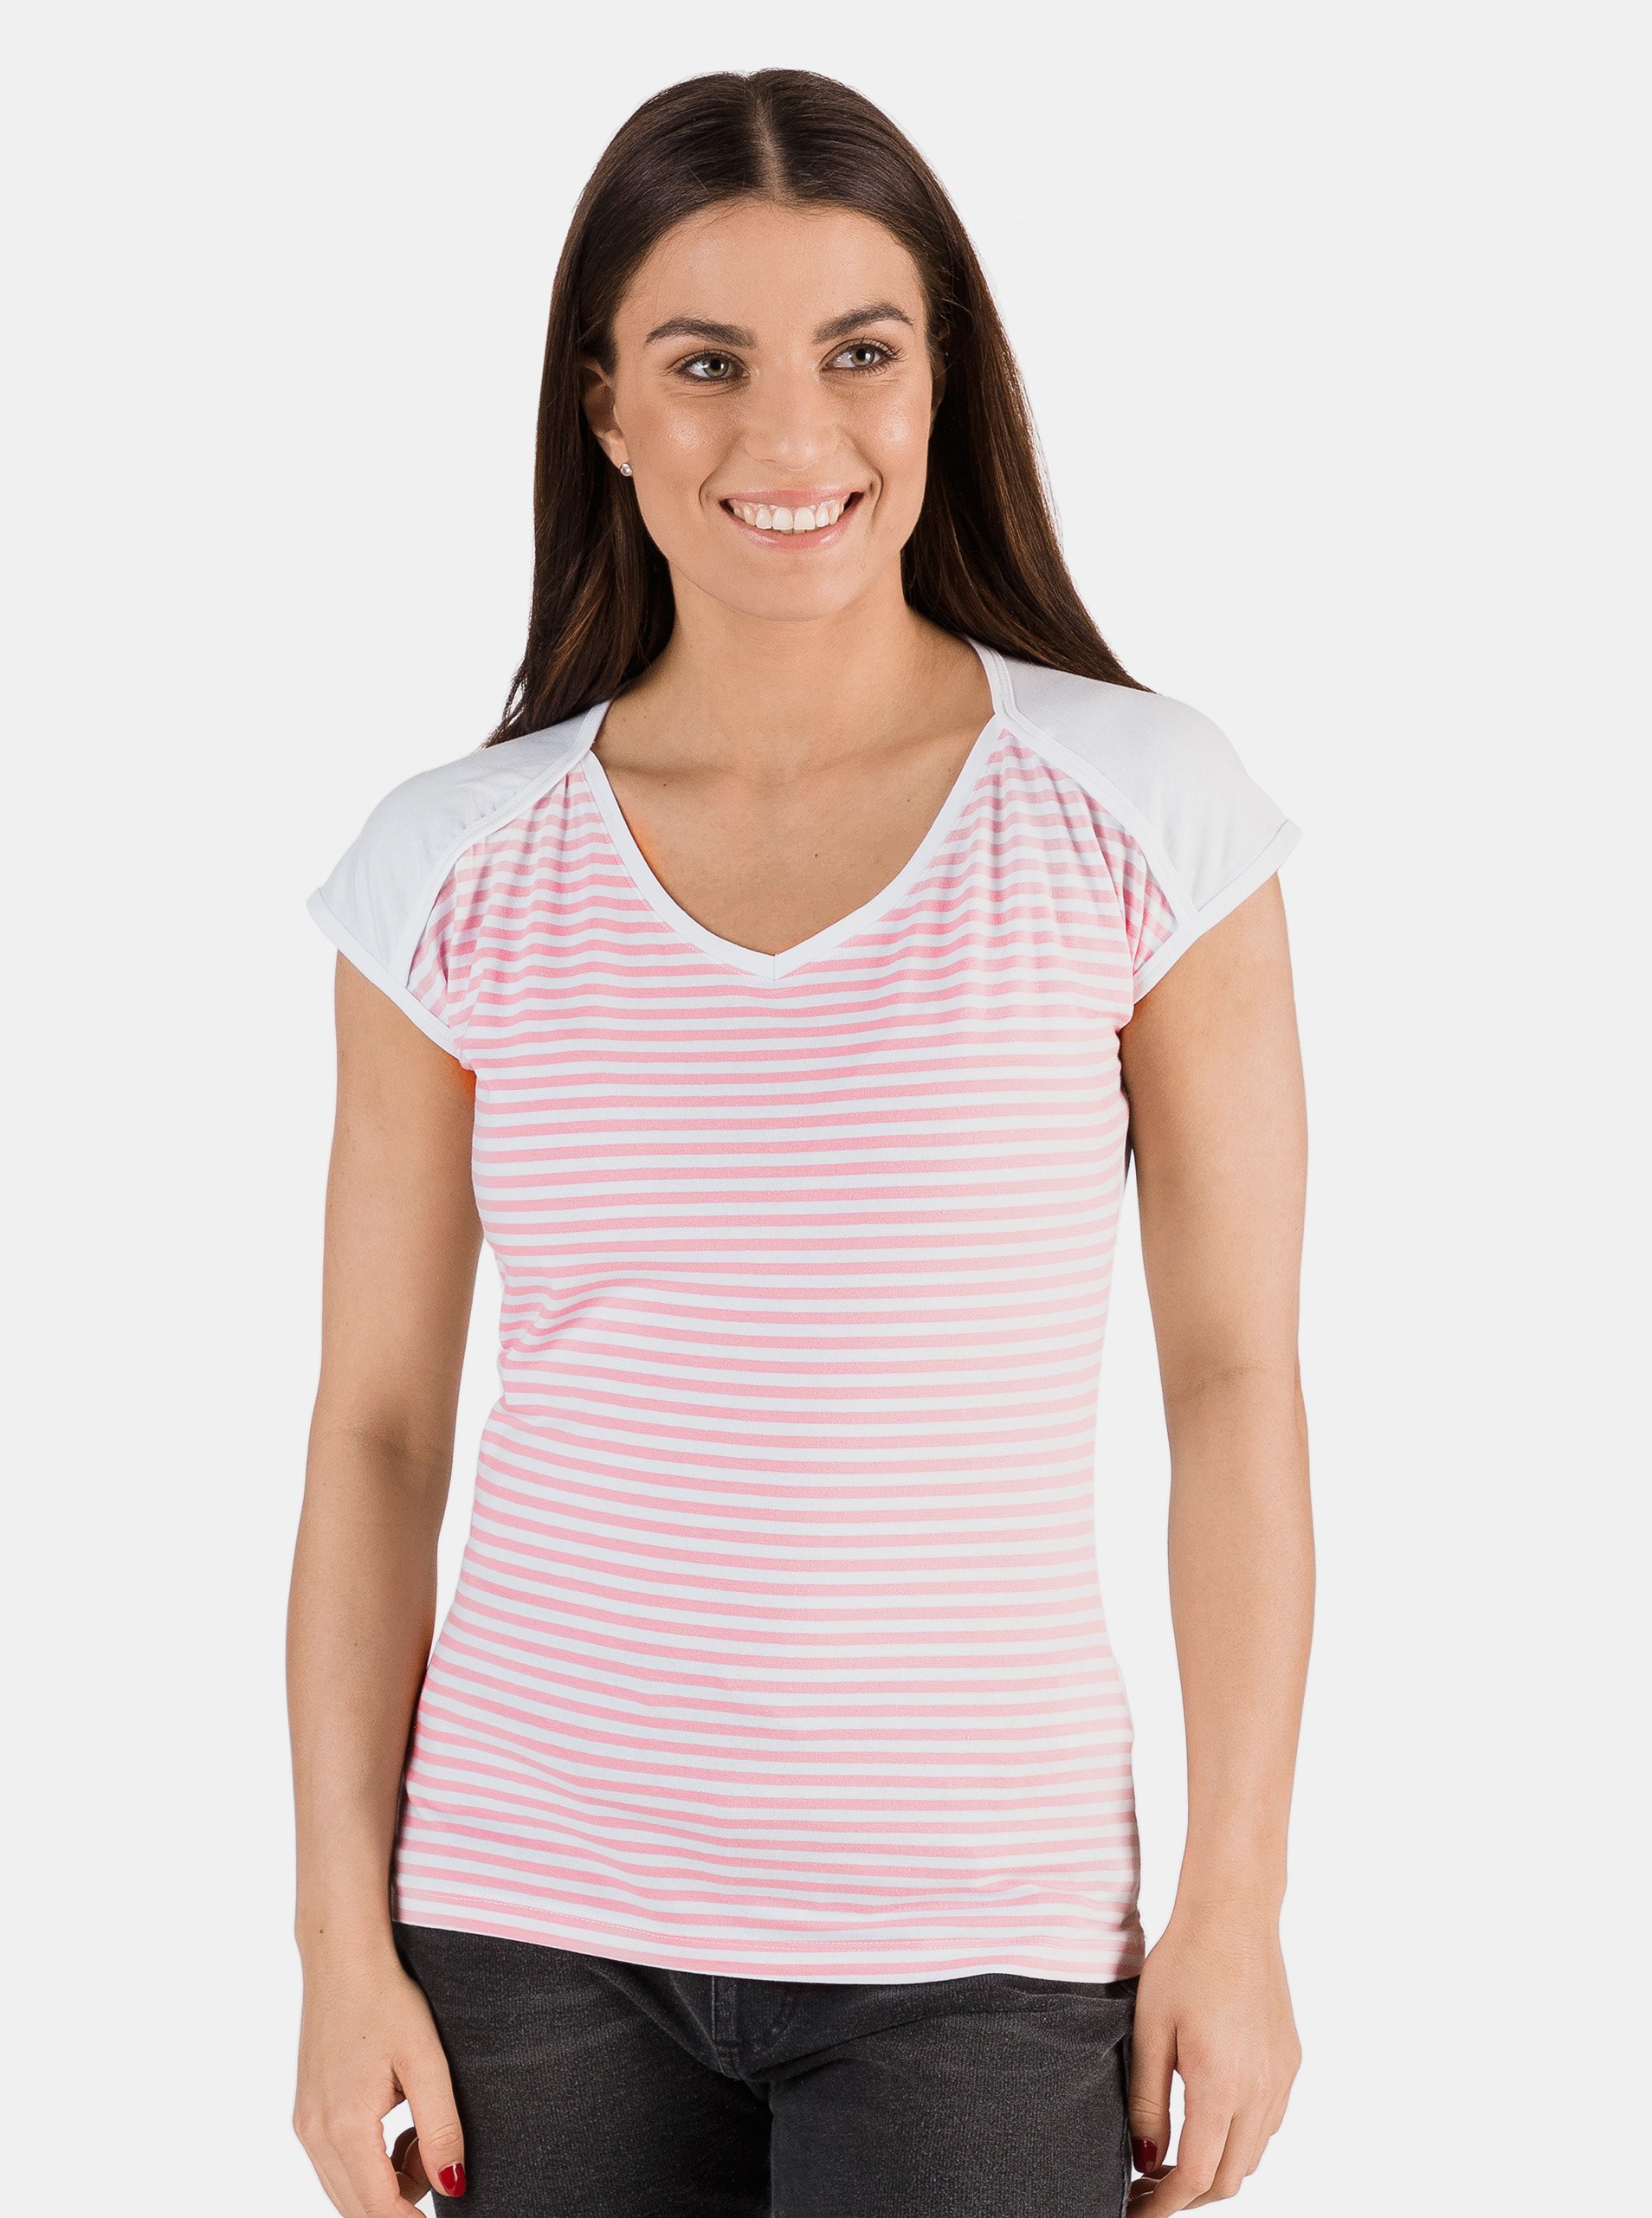 Lacno Ružovo-biele dámske pruhované tričko SAM 73 Jonna